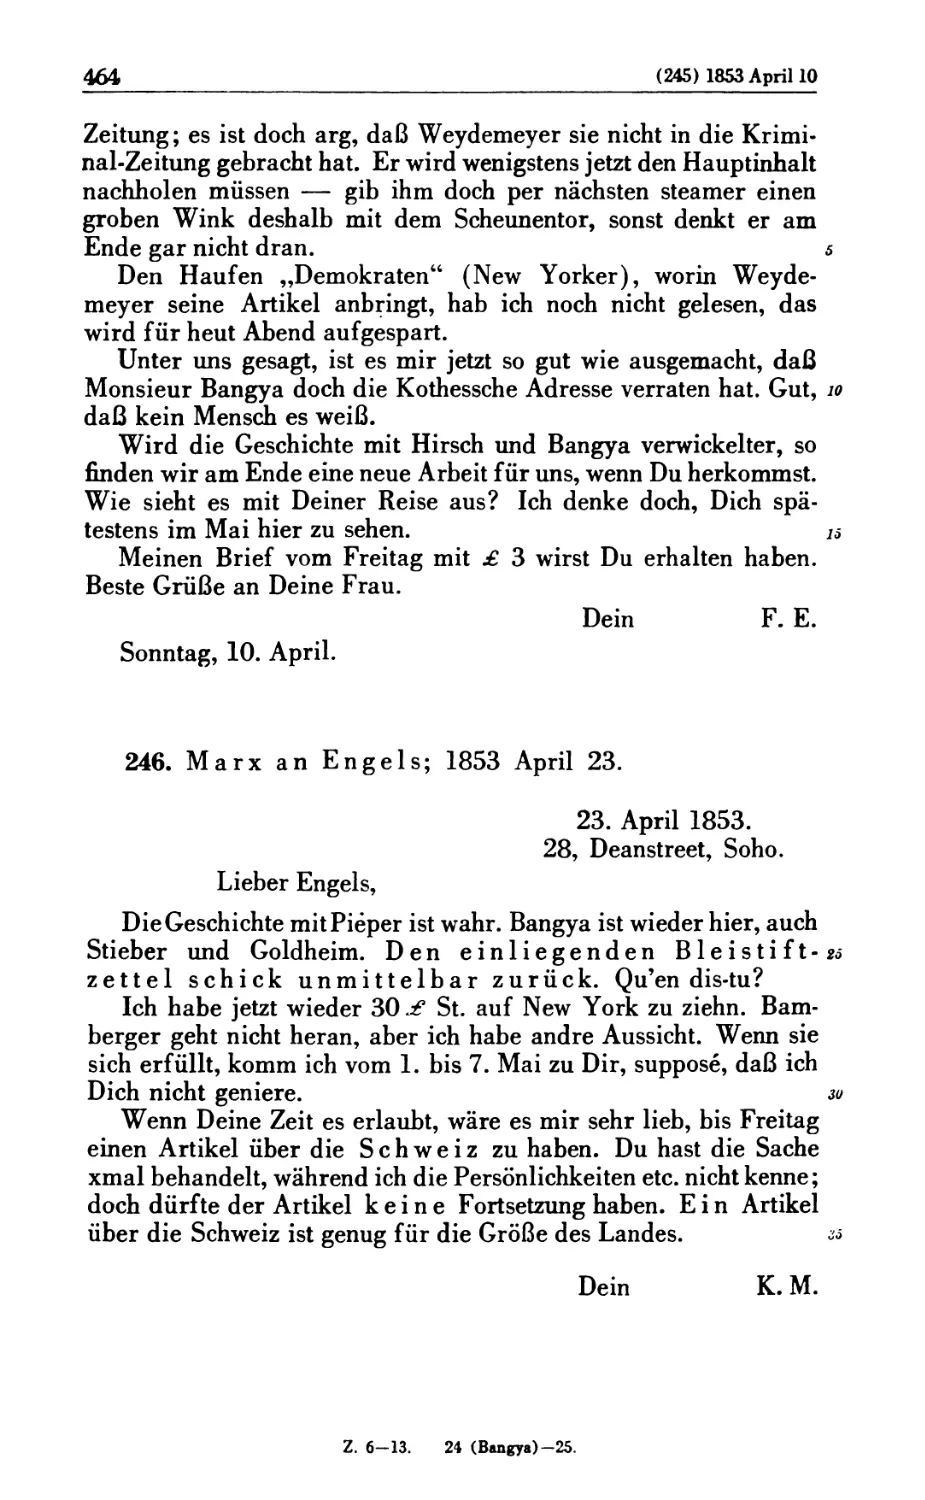 246. Marx an Engels; 1853 April 23